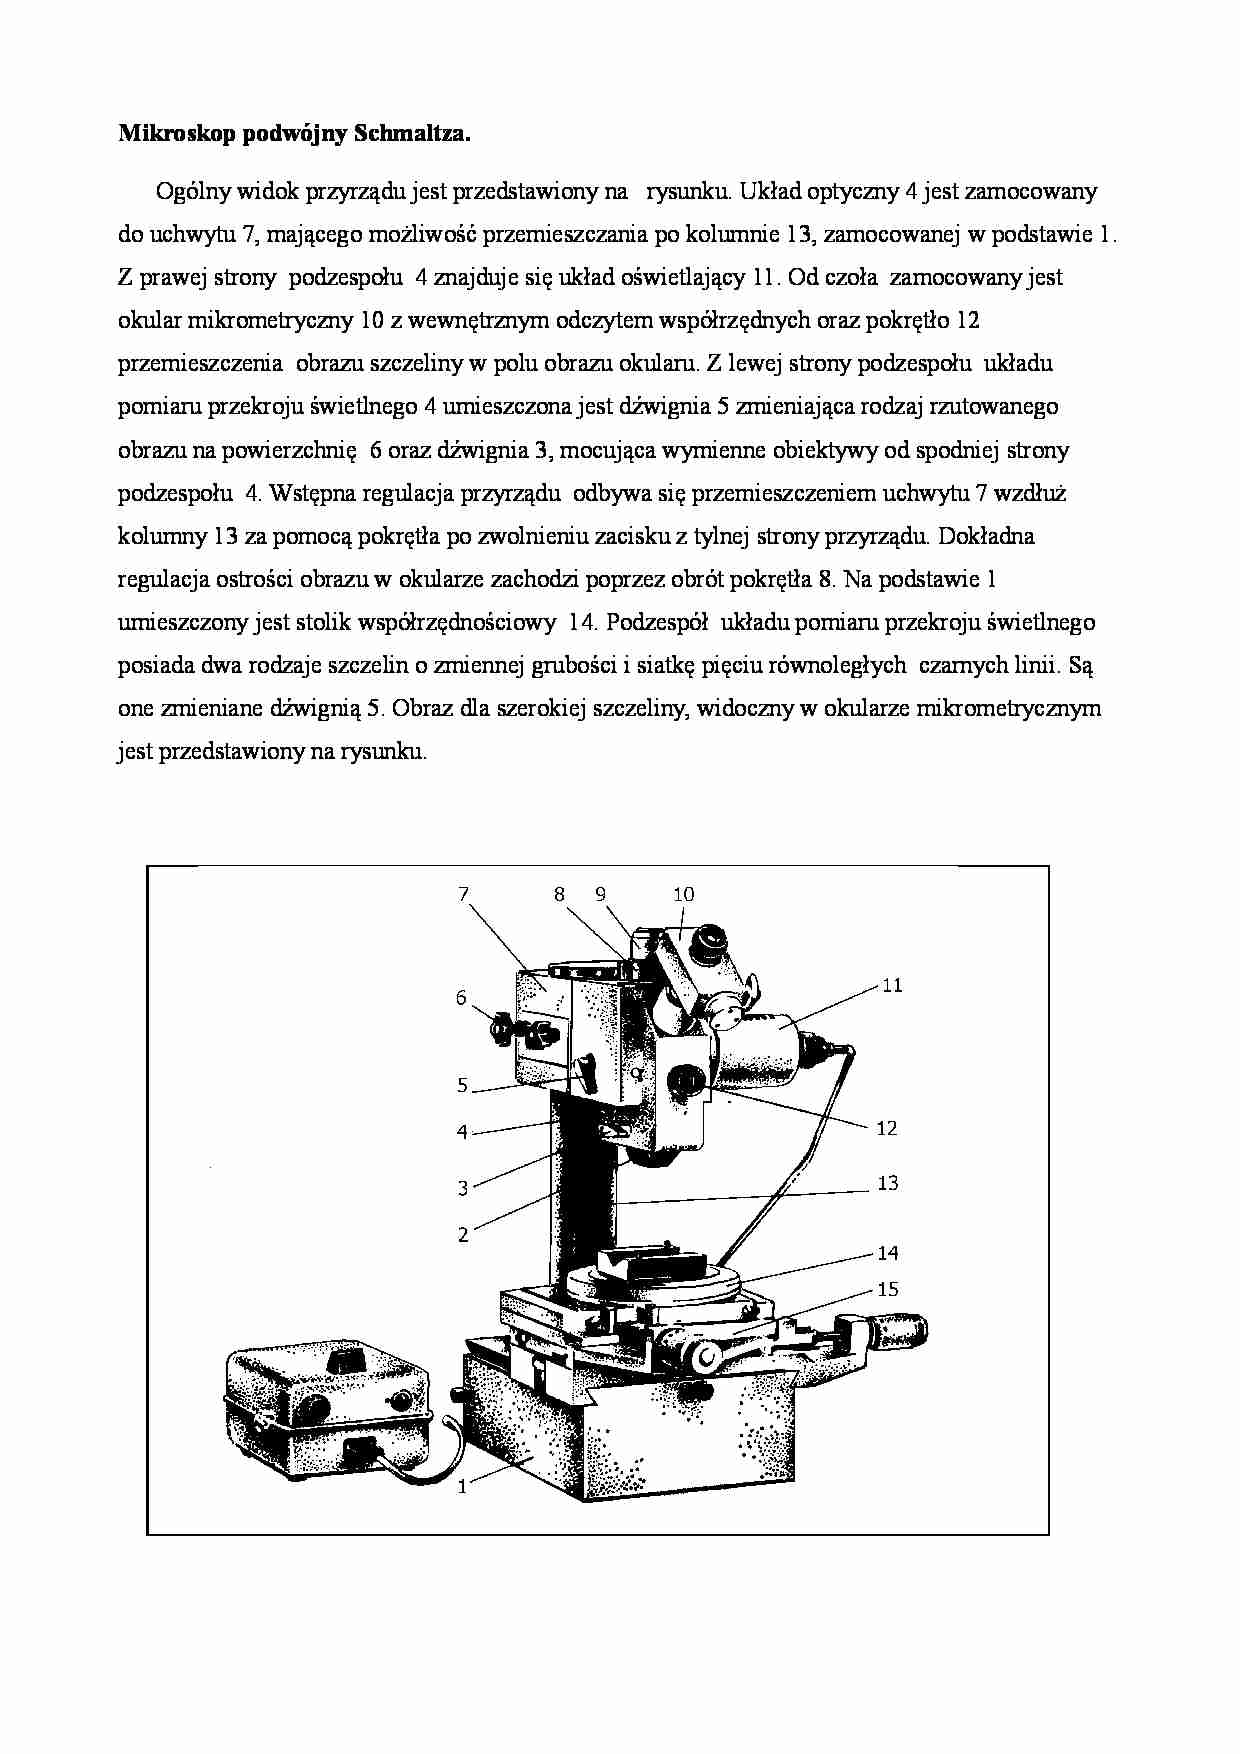 Mikroskop podwójny Schmaltza - strona 1